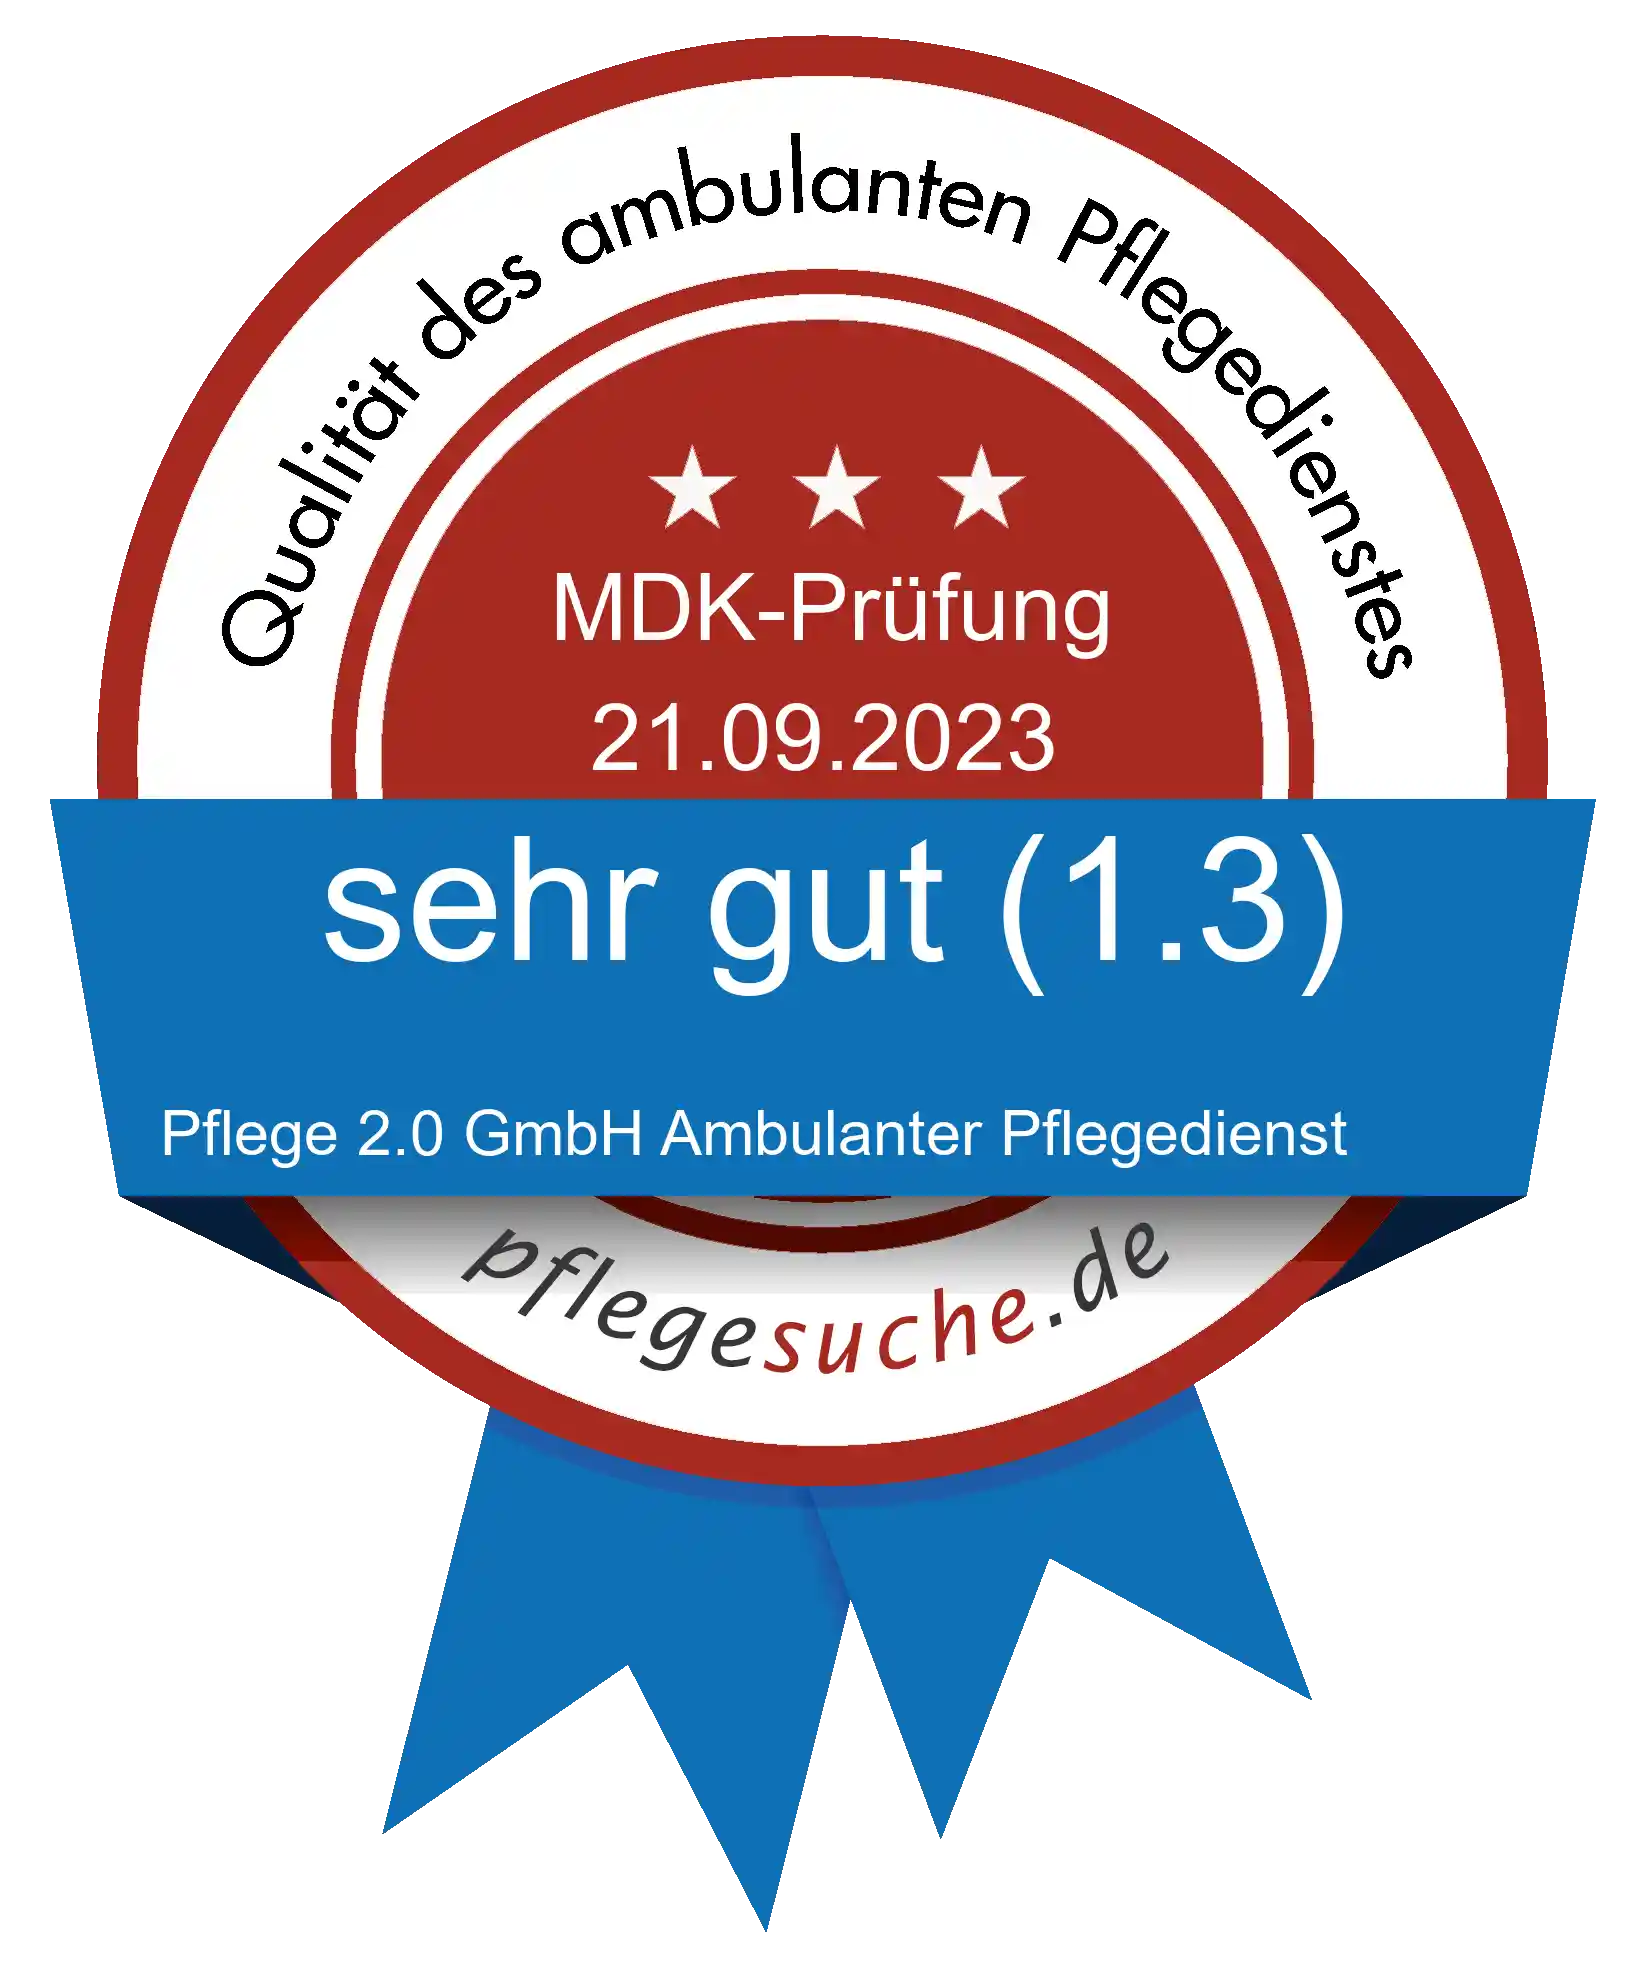 Siegel Benotung: Pflege 2.0 GmbH Ambulanter Pflegedienst